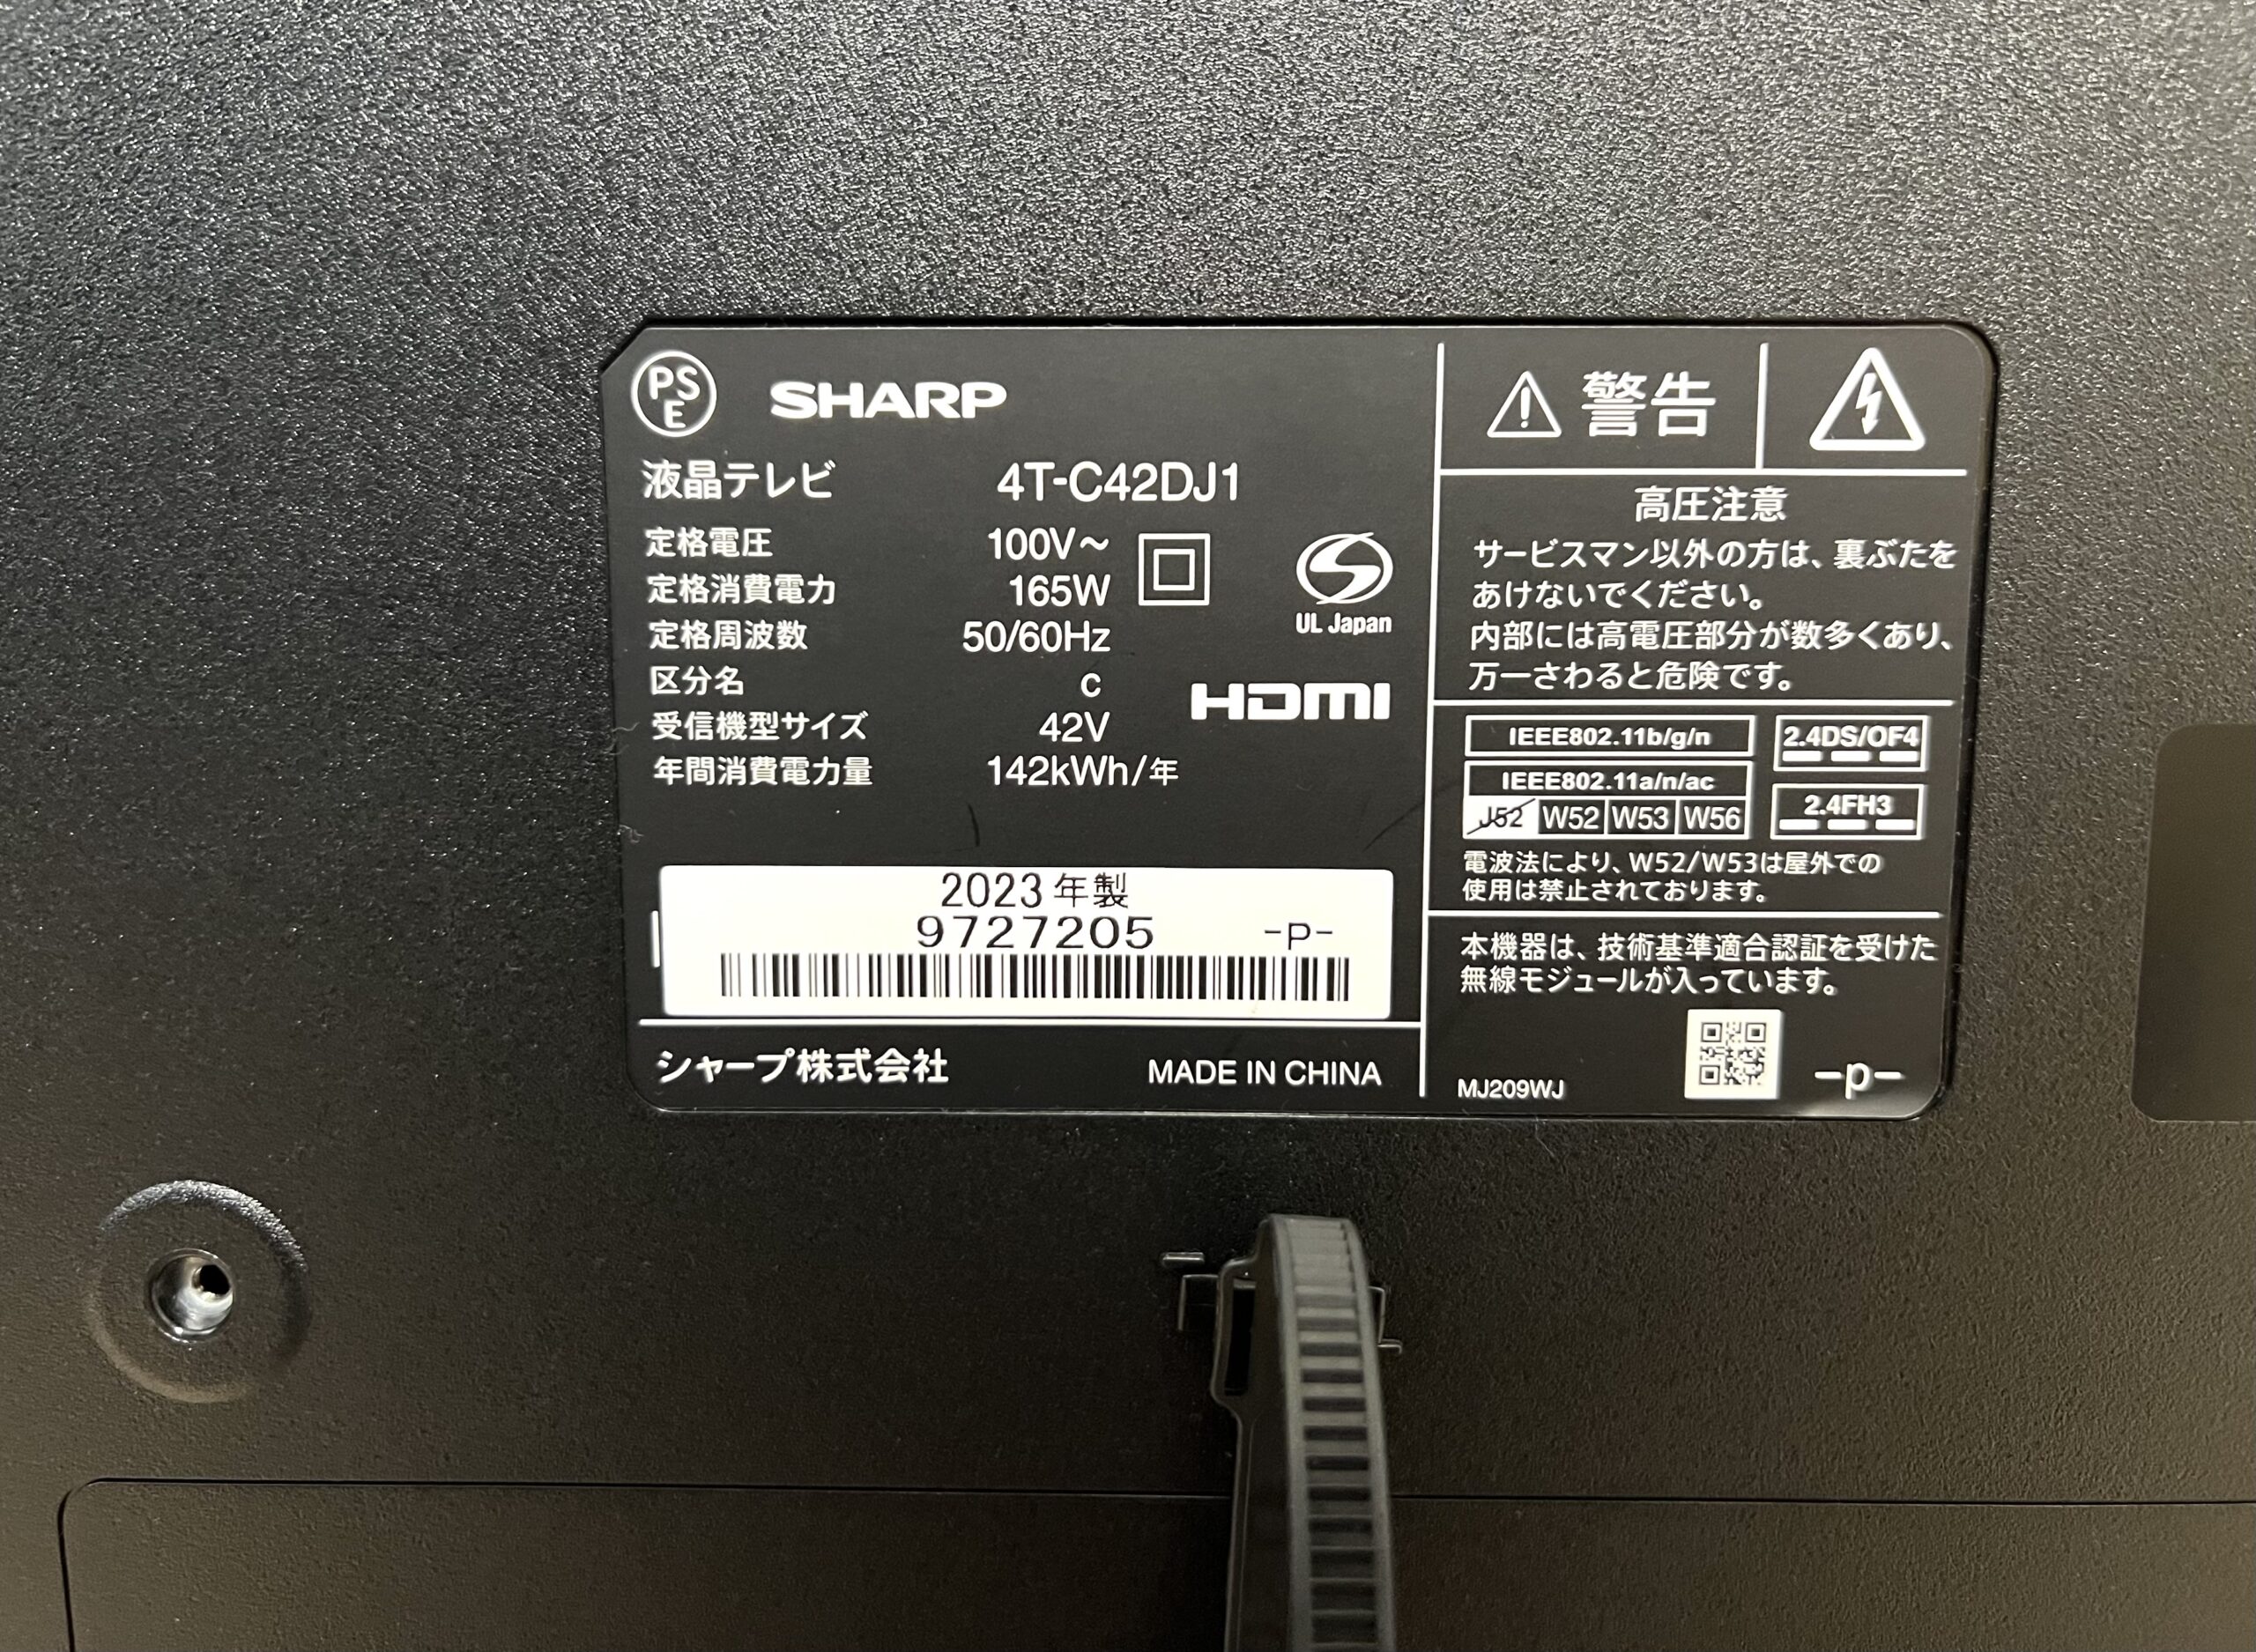 SHARP AQUOS 4K液晶テレビ 4T-C42DJ1を出張買取しました！テレビの買取 ...